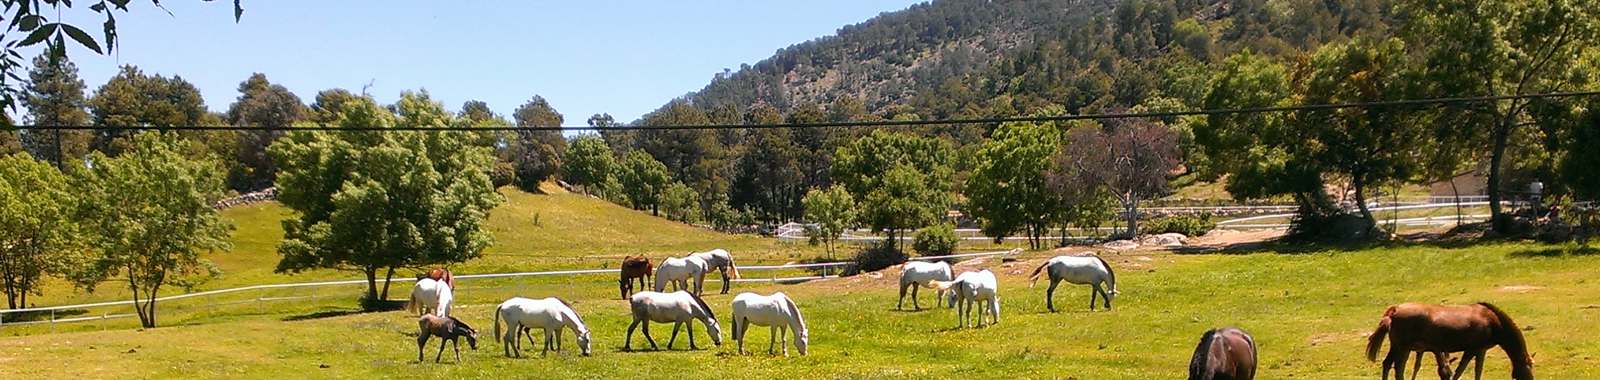 Casa Rural El Rinc�n de Gredos